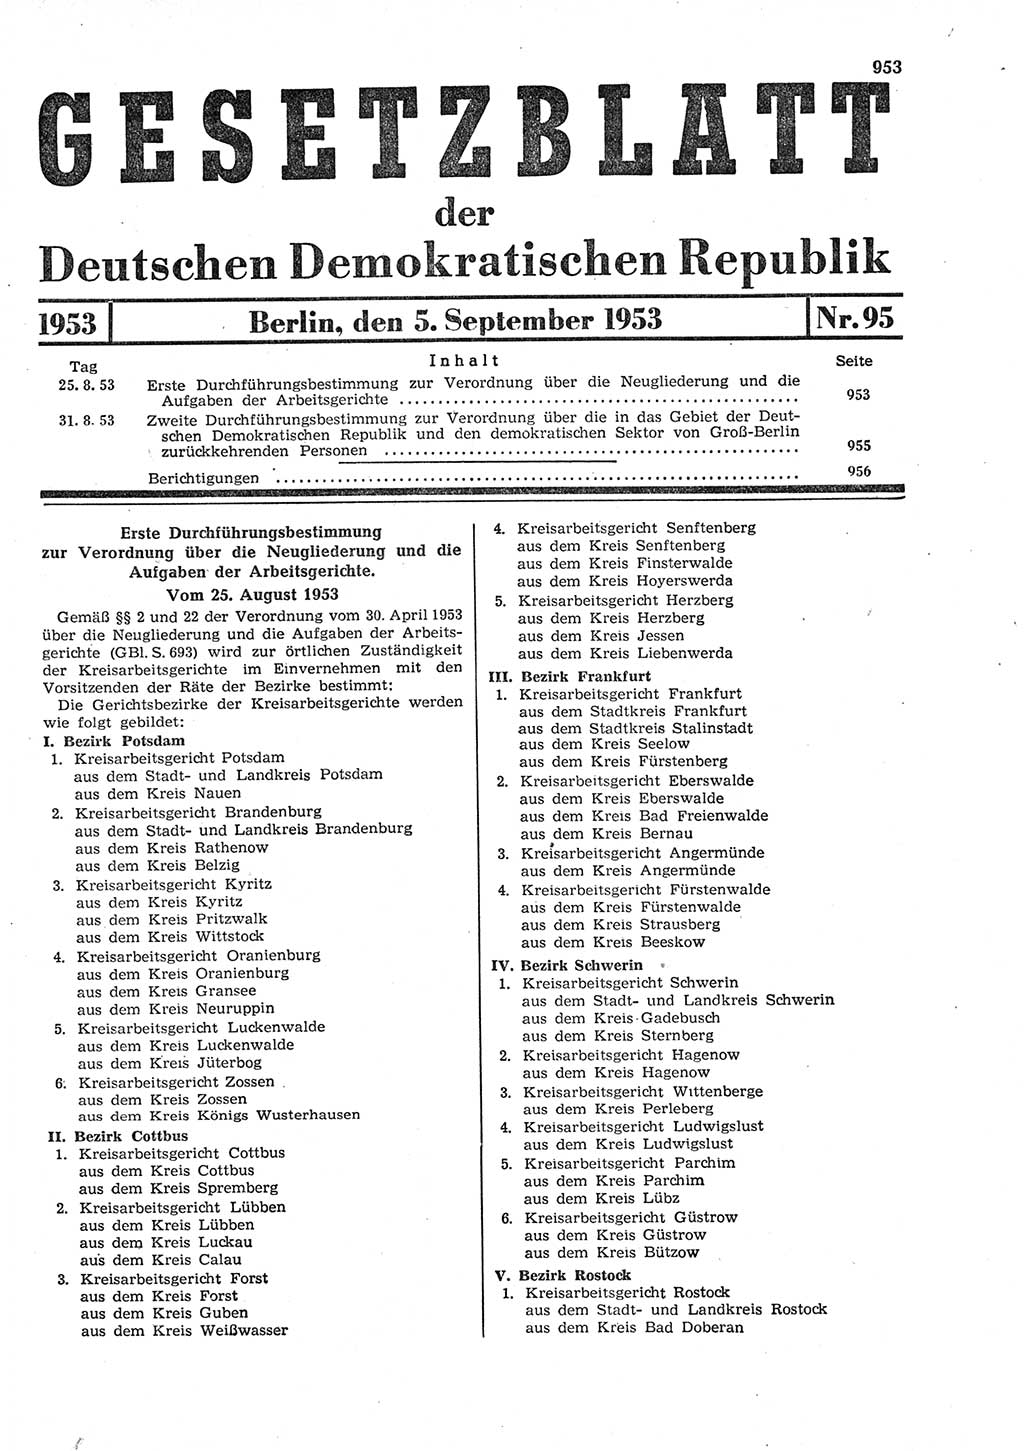 Gesetzblatt (GBl.) der Deutschen Demokratischen Republik (DDR) 1953, Seite 953 (GBl. DDR 1953, S. 953)